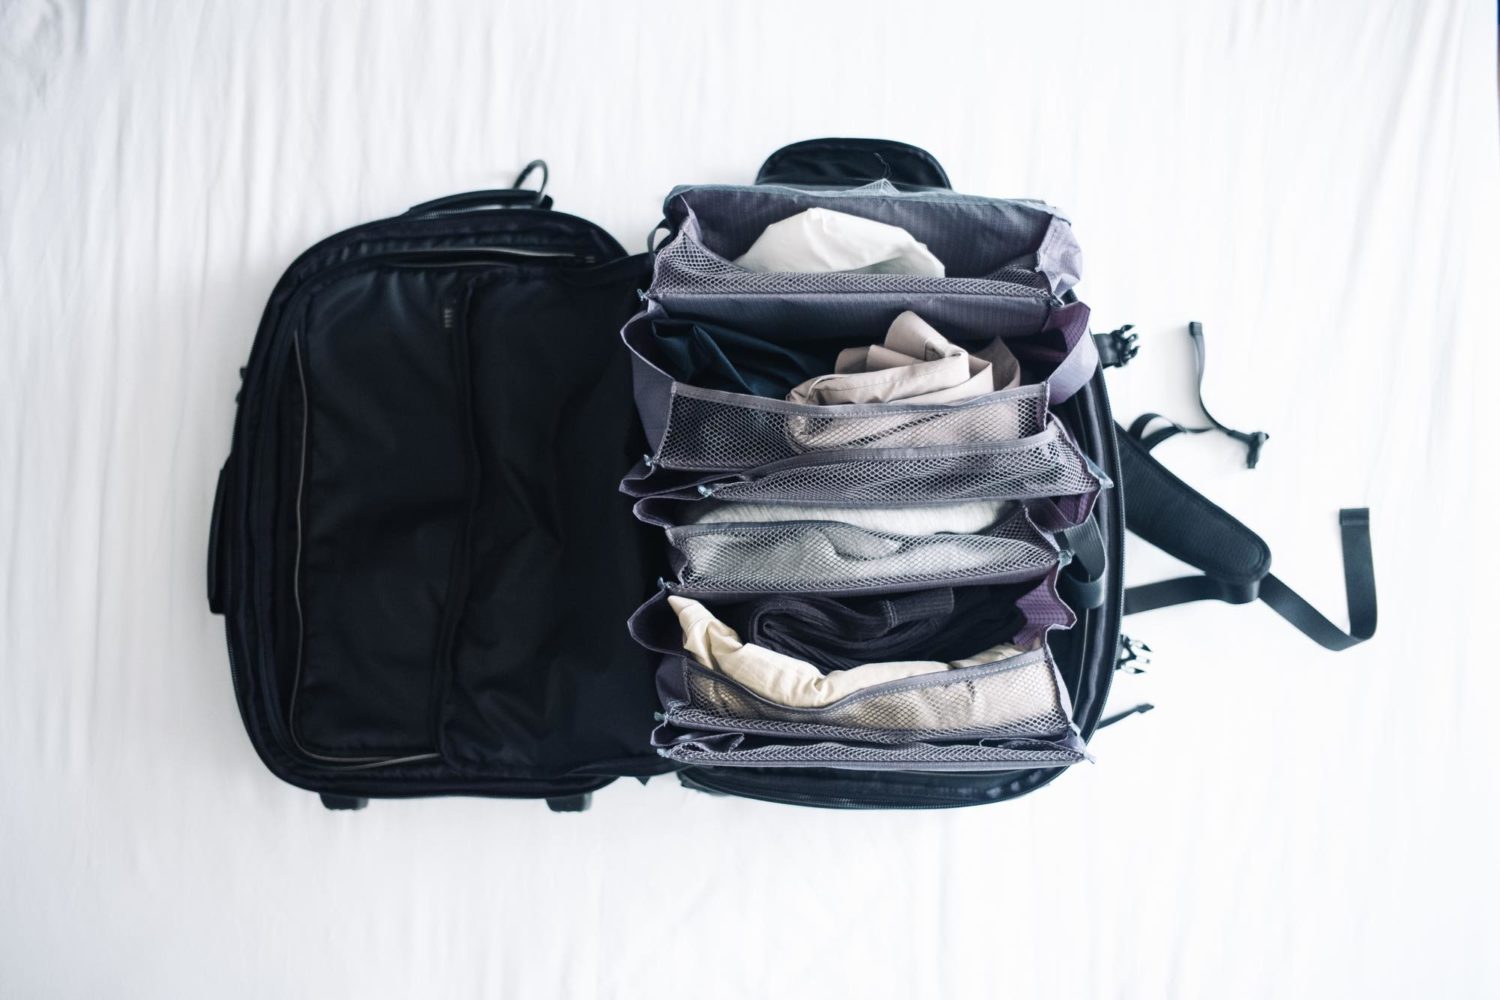 旅先での衣類の整理に 折り畳んで収納できる スーツケースクローゼット レビュー Pr